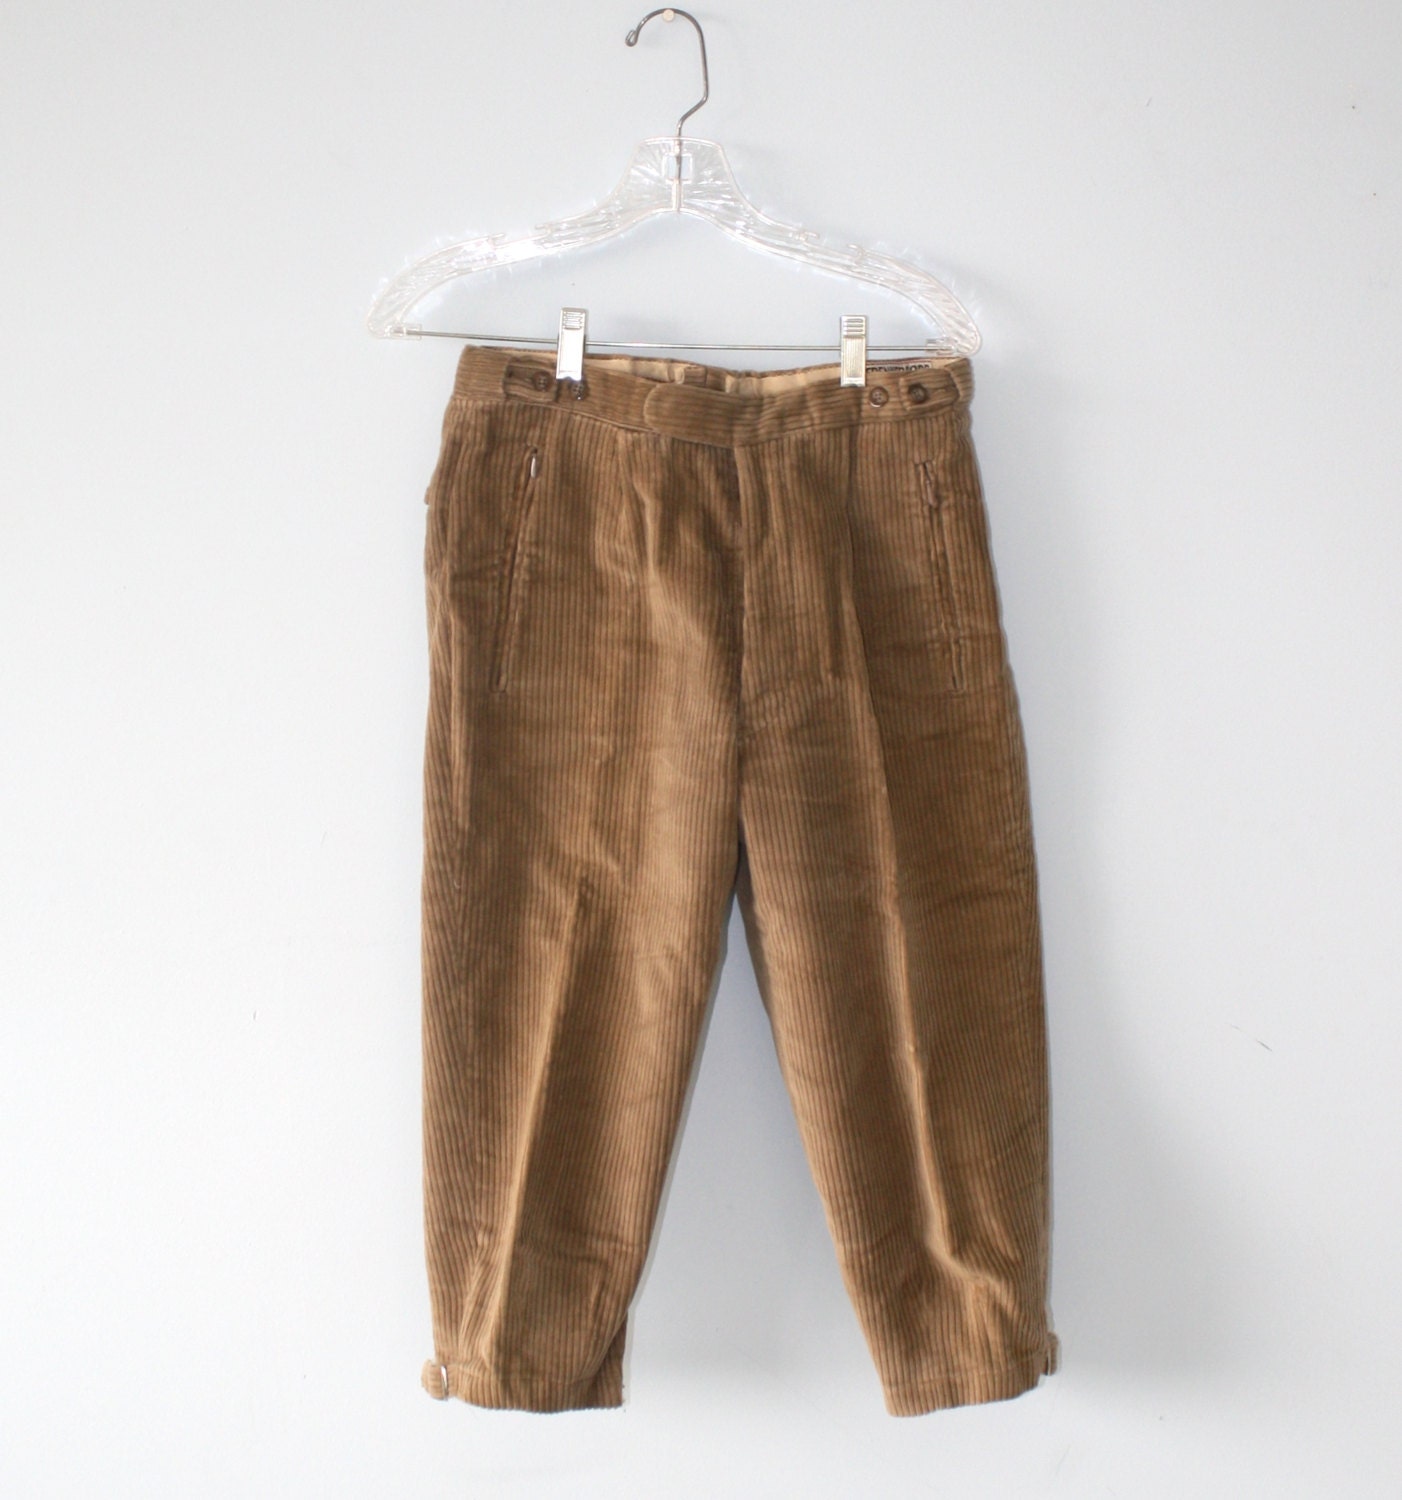 Vintage Men's Trachten Pants / Khaki Tan Corduroy German